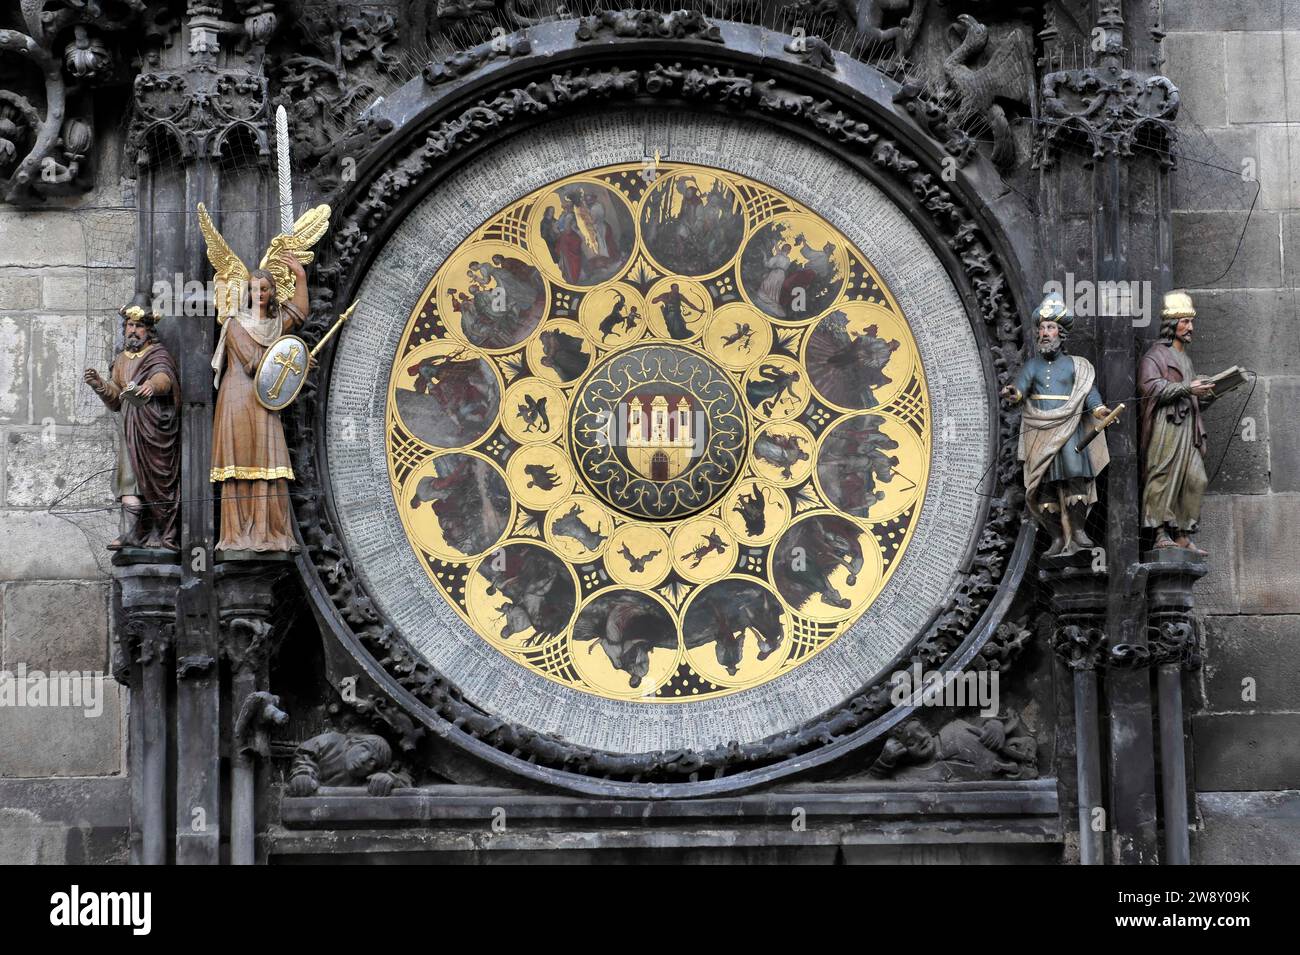 Detail, berühmte mittelalterliche astronomische Uhr, die am Turm des Alten Rathauses befestigt ist. Sie wurde 1410 erbaut und ist die älteste Arbeitsuhr der Welt Stockfoto